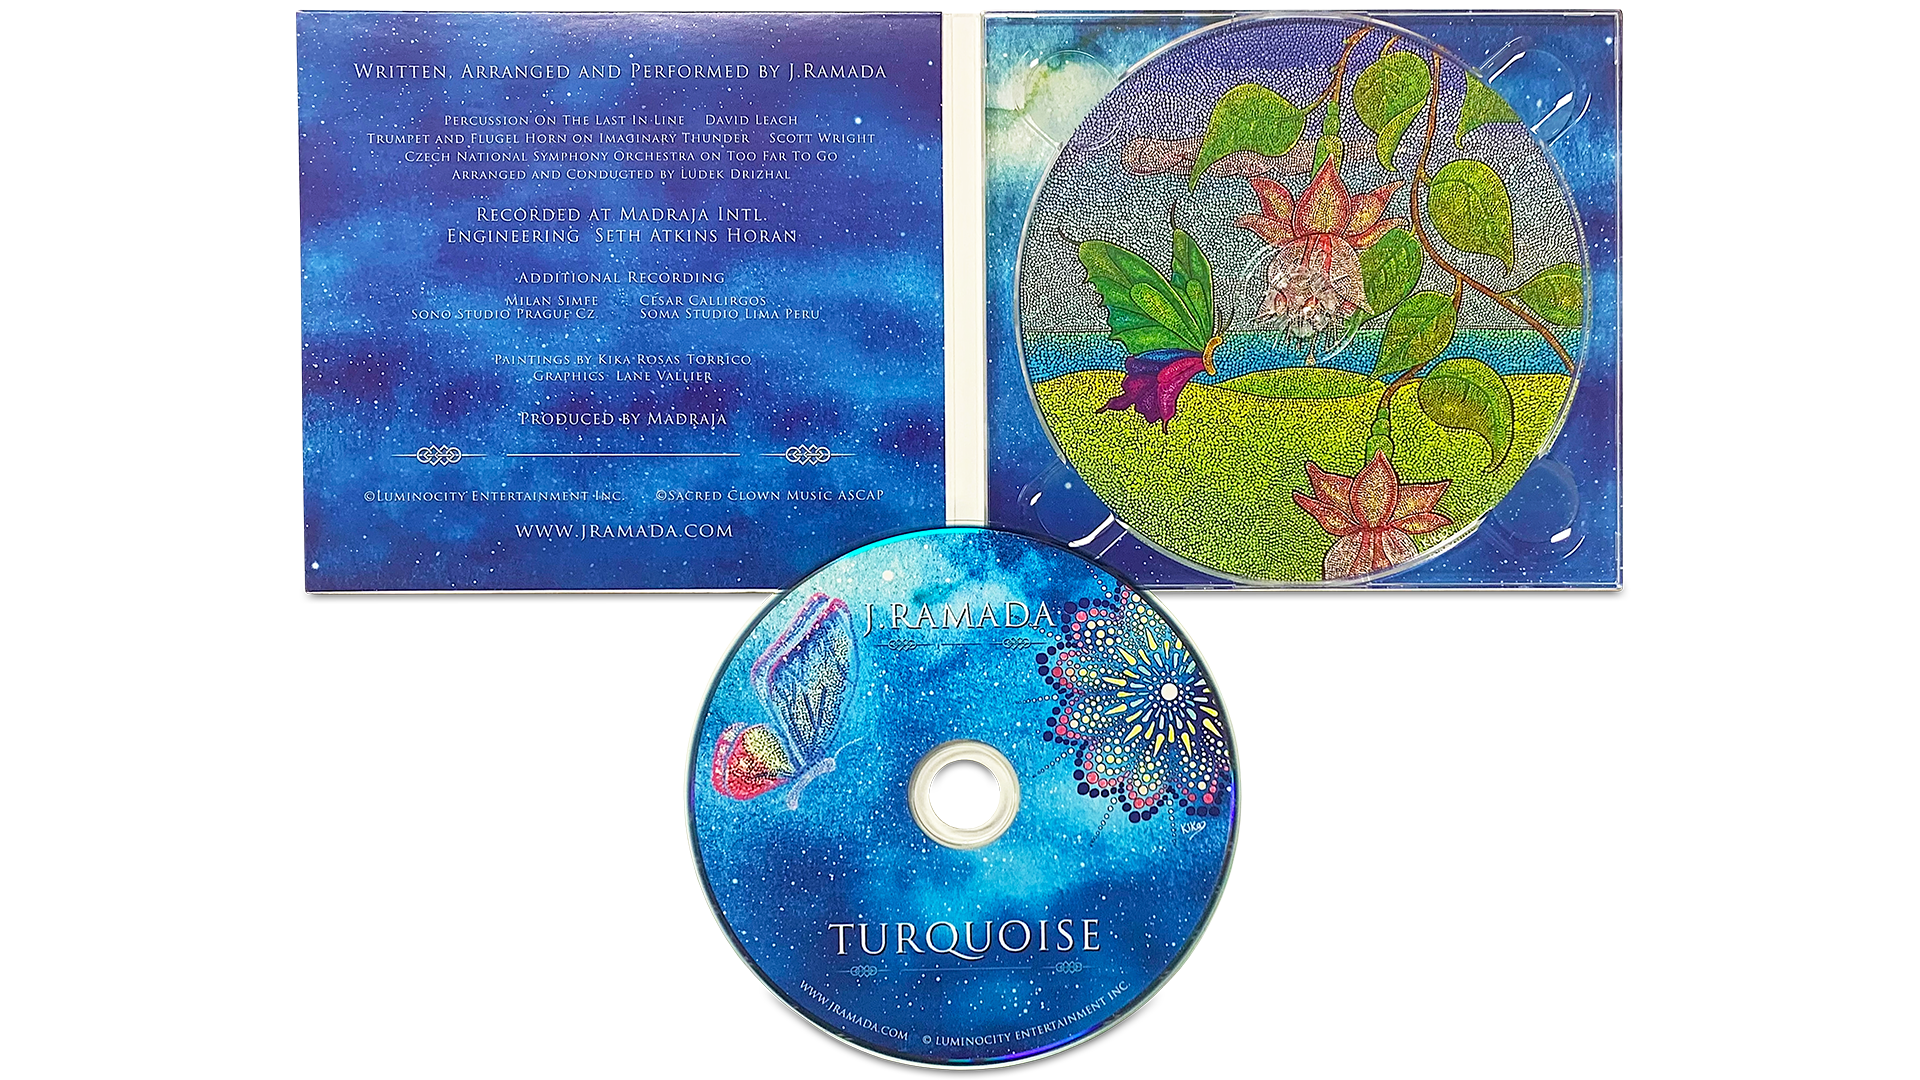 j.ramada turquoise album project layout